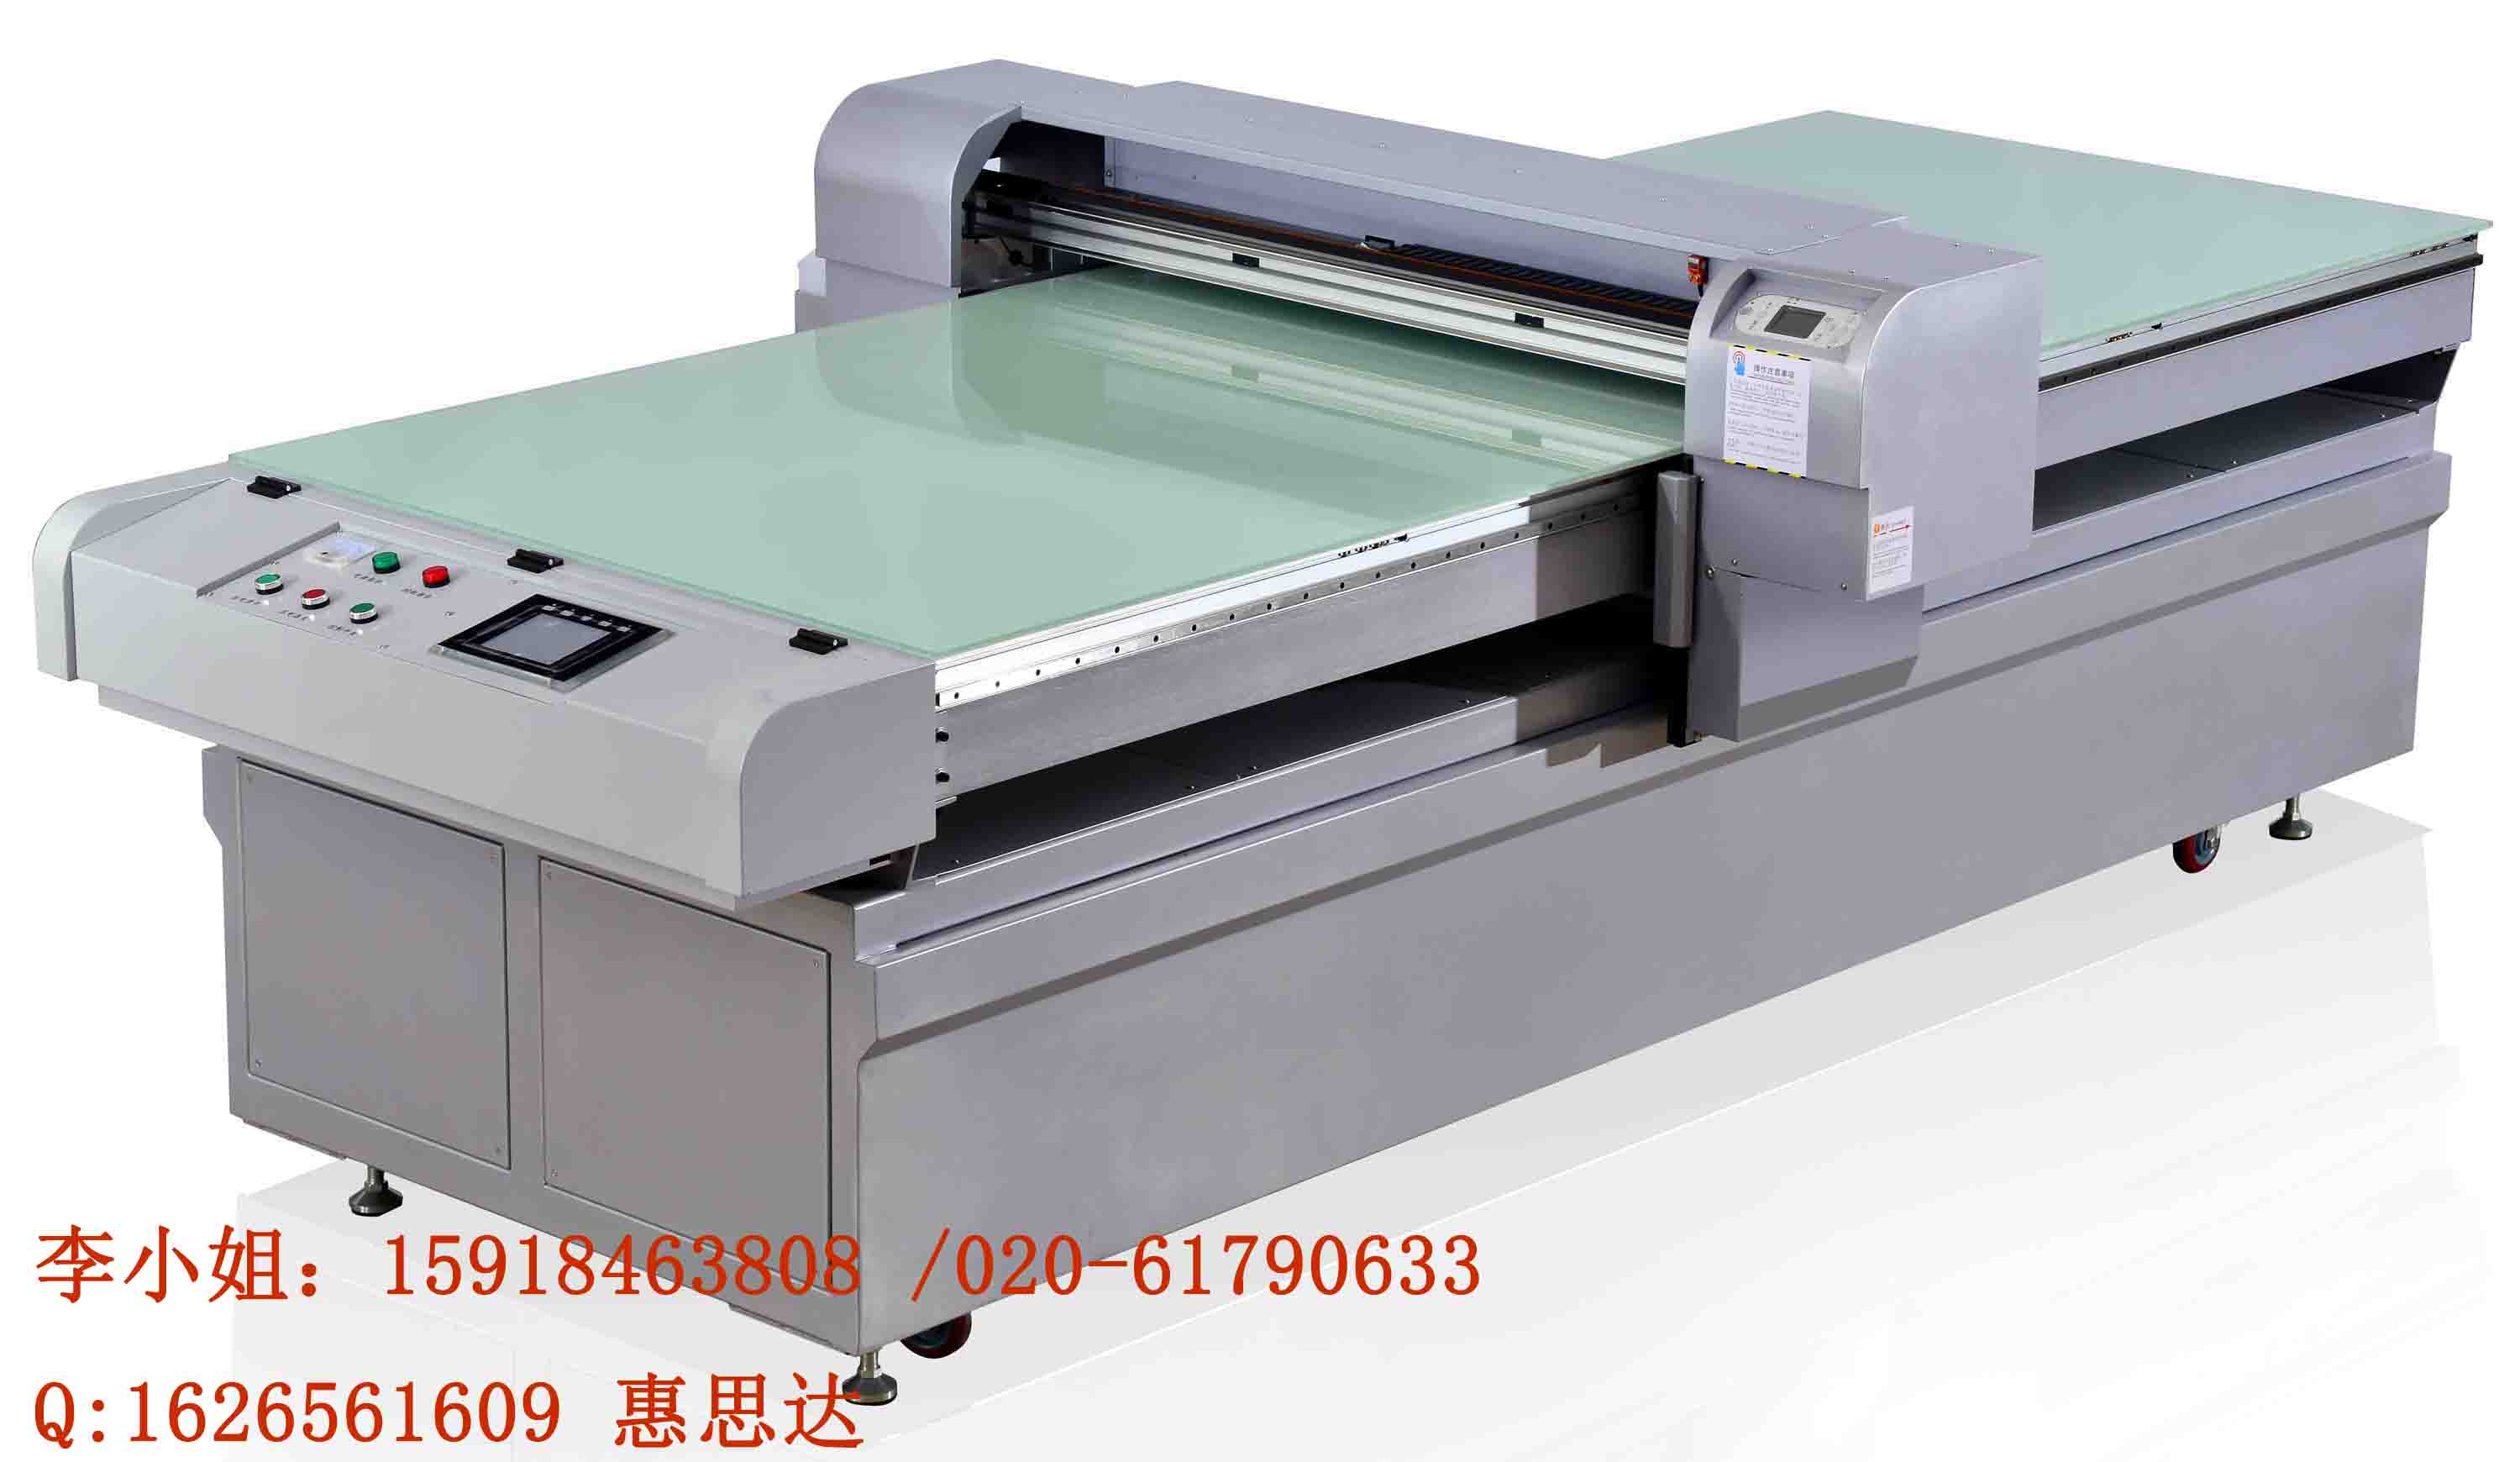 供应用于裁片印花的裁片印花TS-1200E